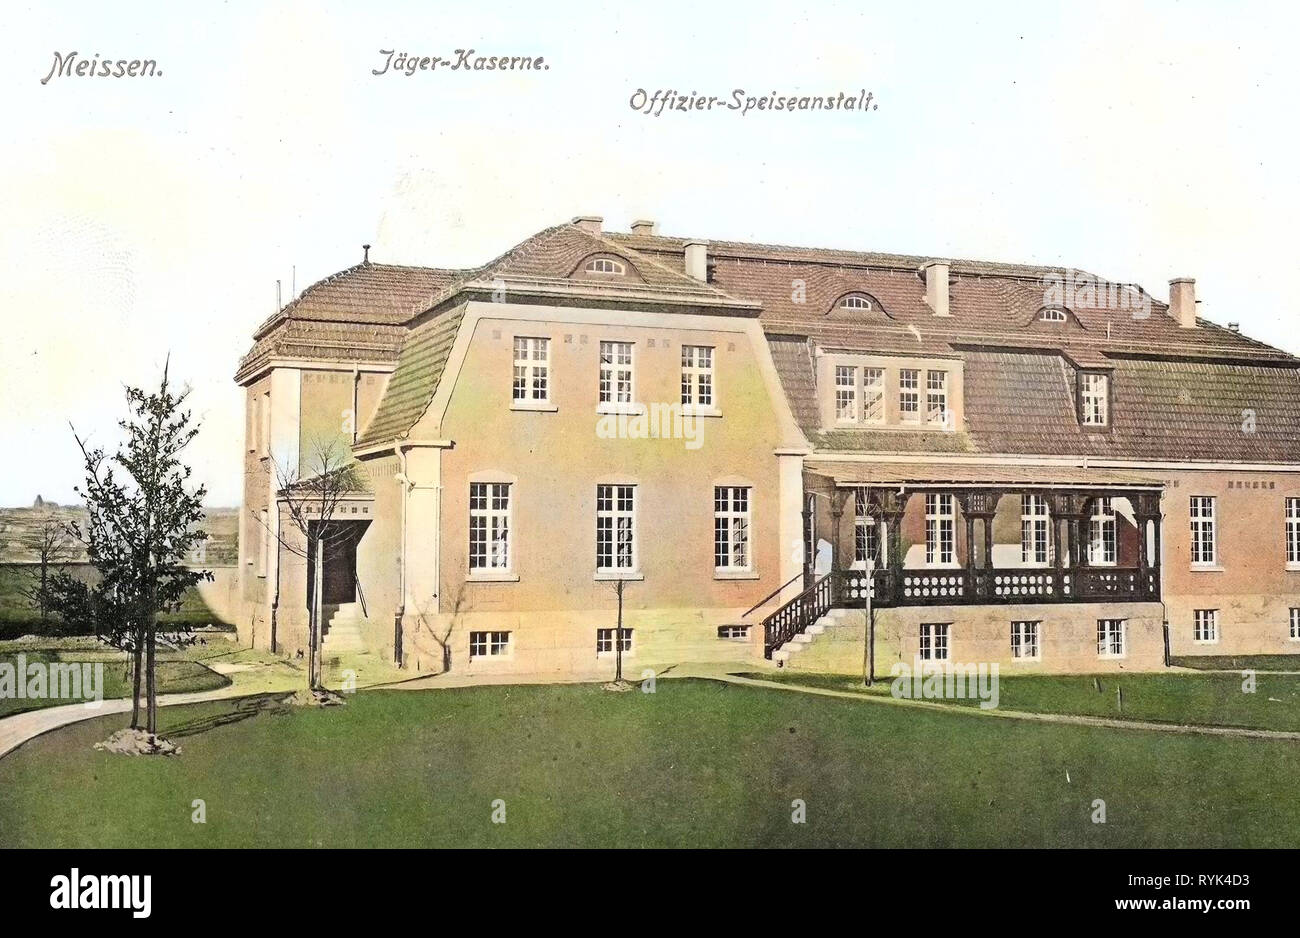 Officers' mess in Meißen, Military facilities of Germany, 2. Königlich Sächsisches Jäger-Bataillon Nr. 13, Buildings in Meißen, 1914, Meißen, Jägerkaserne, Offizier, Speiseanstalt Stock Photo